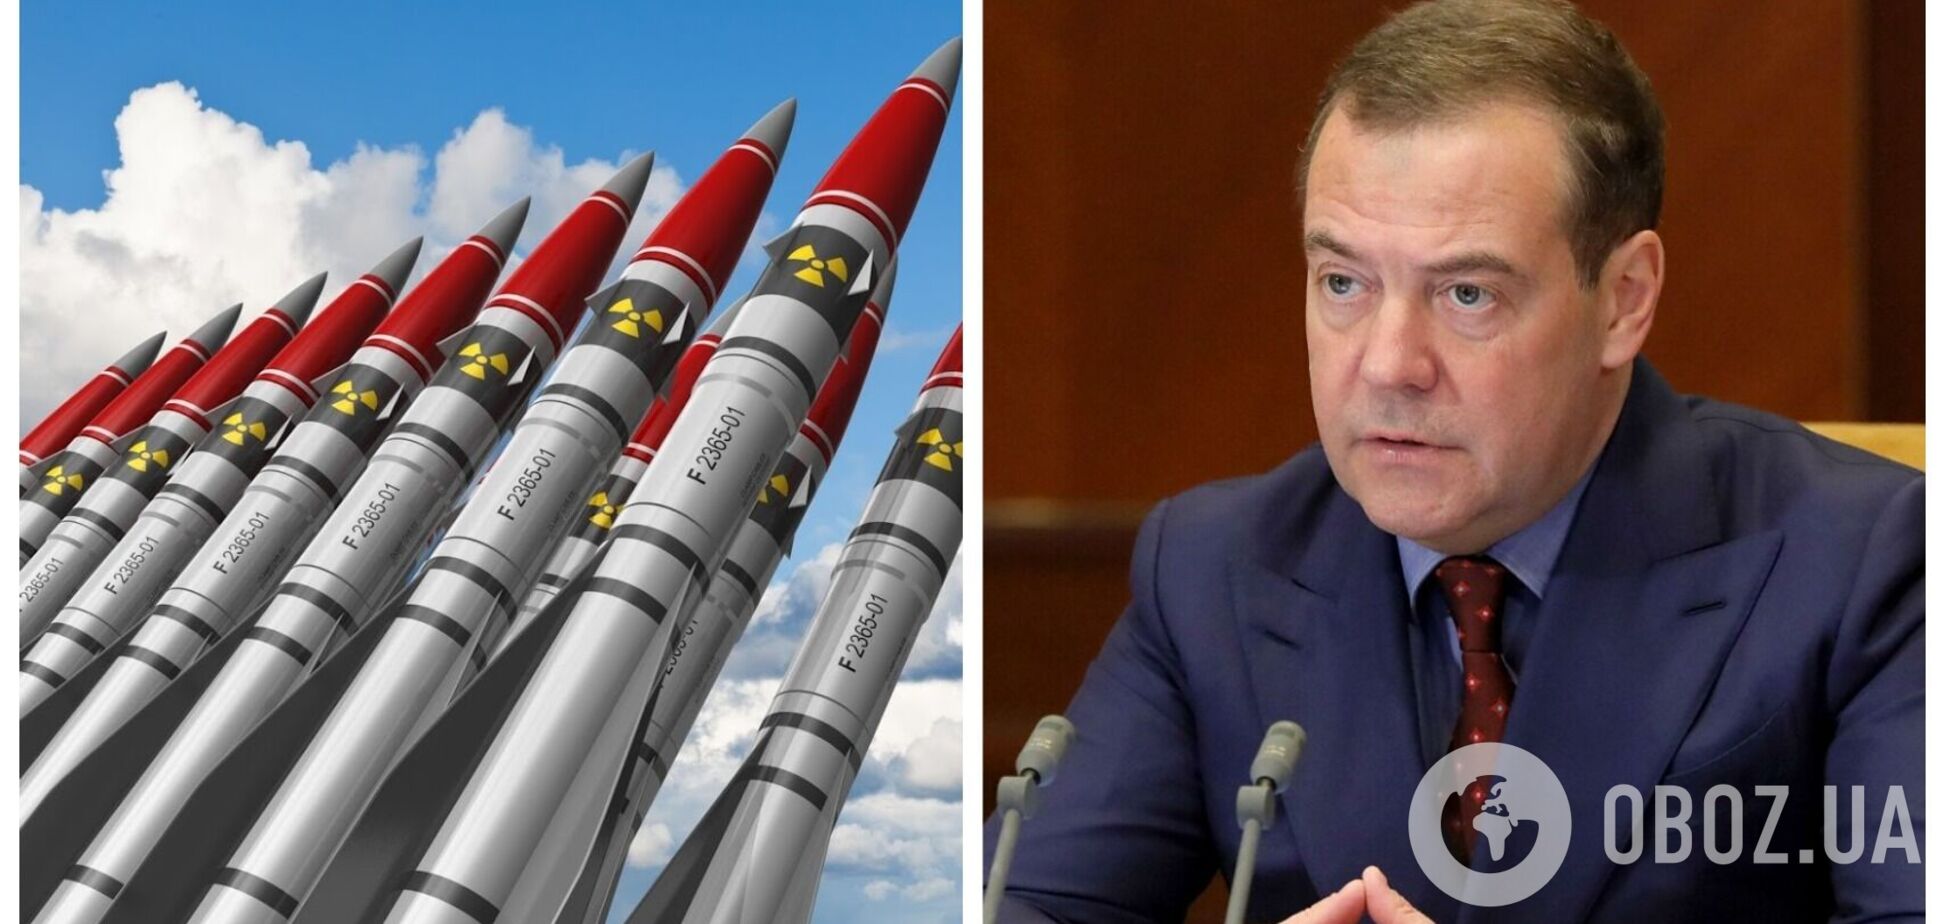 Медведев опять угрожает ядерным оружием